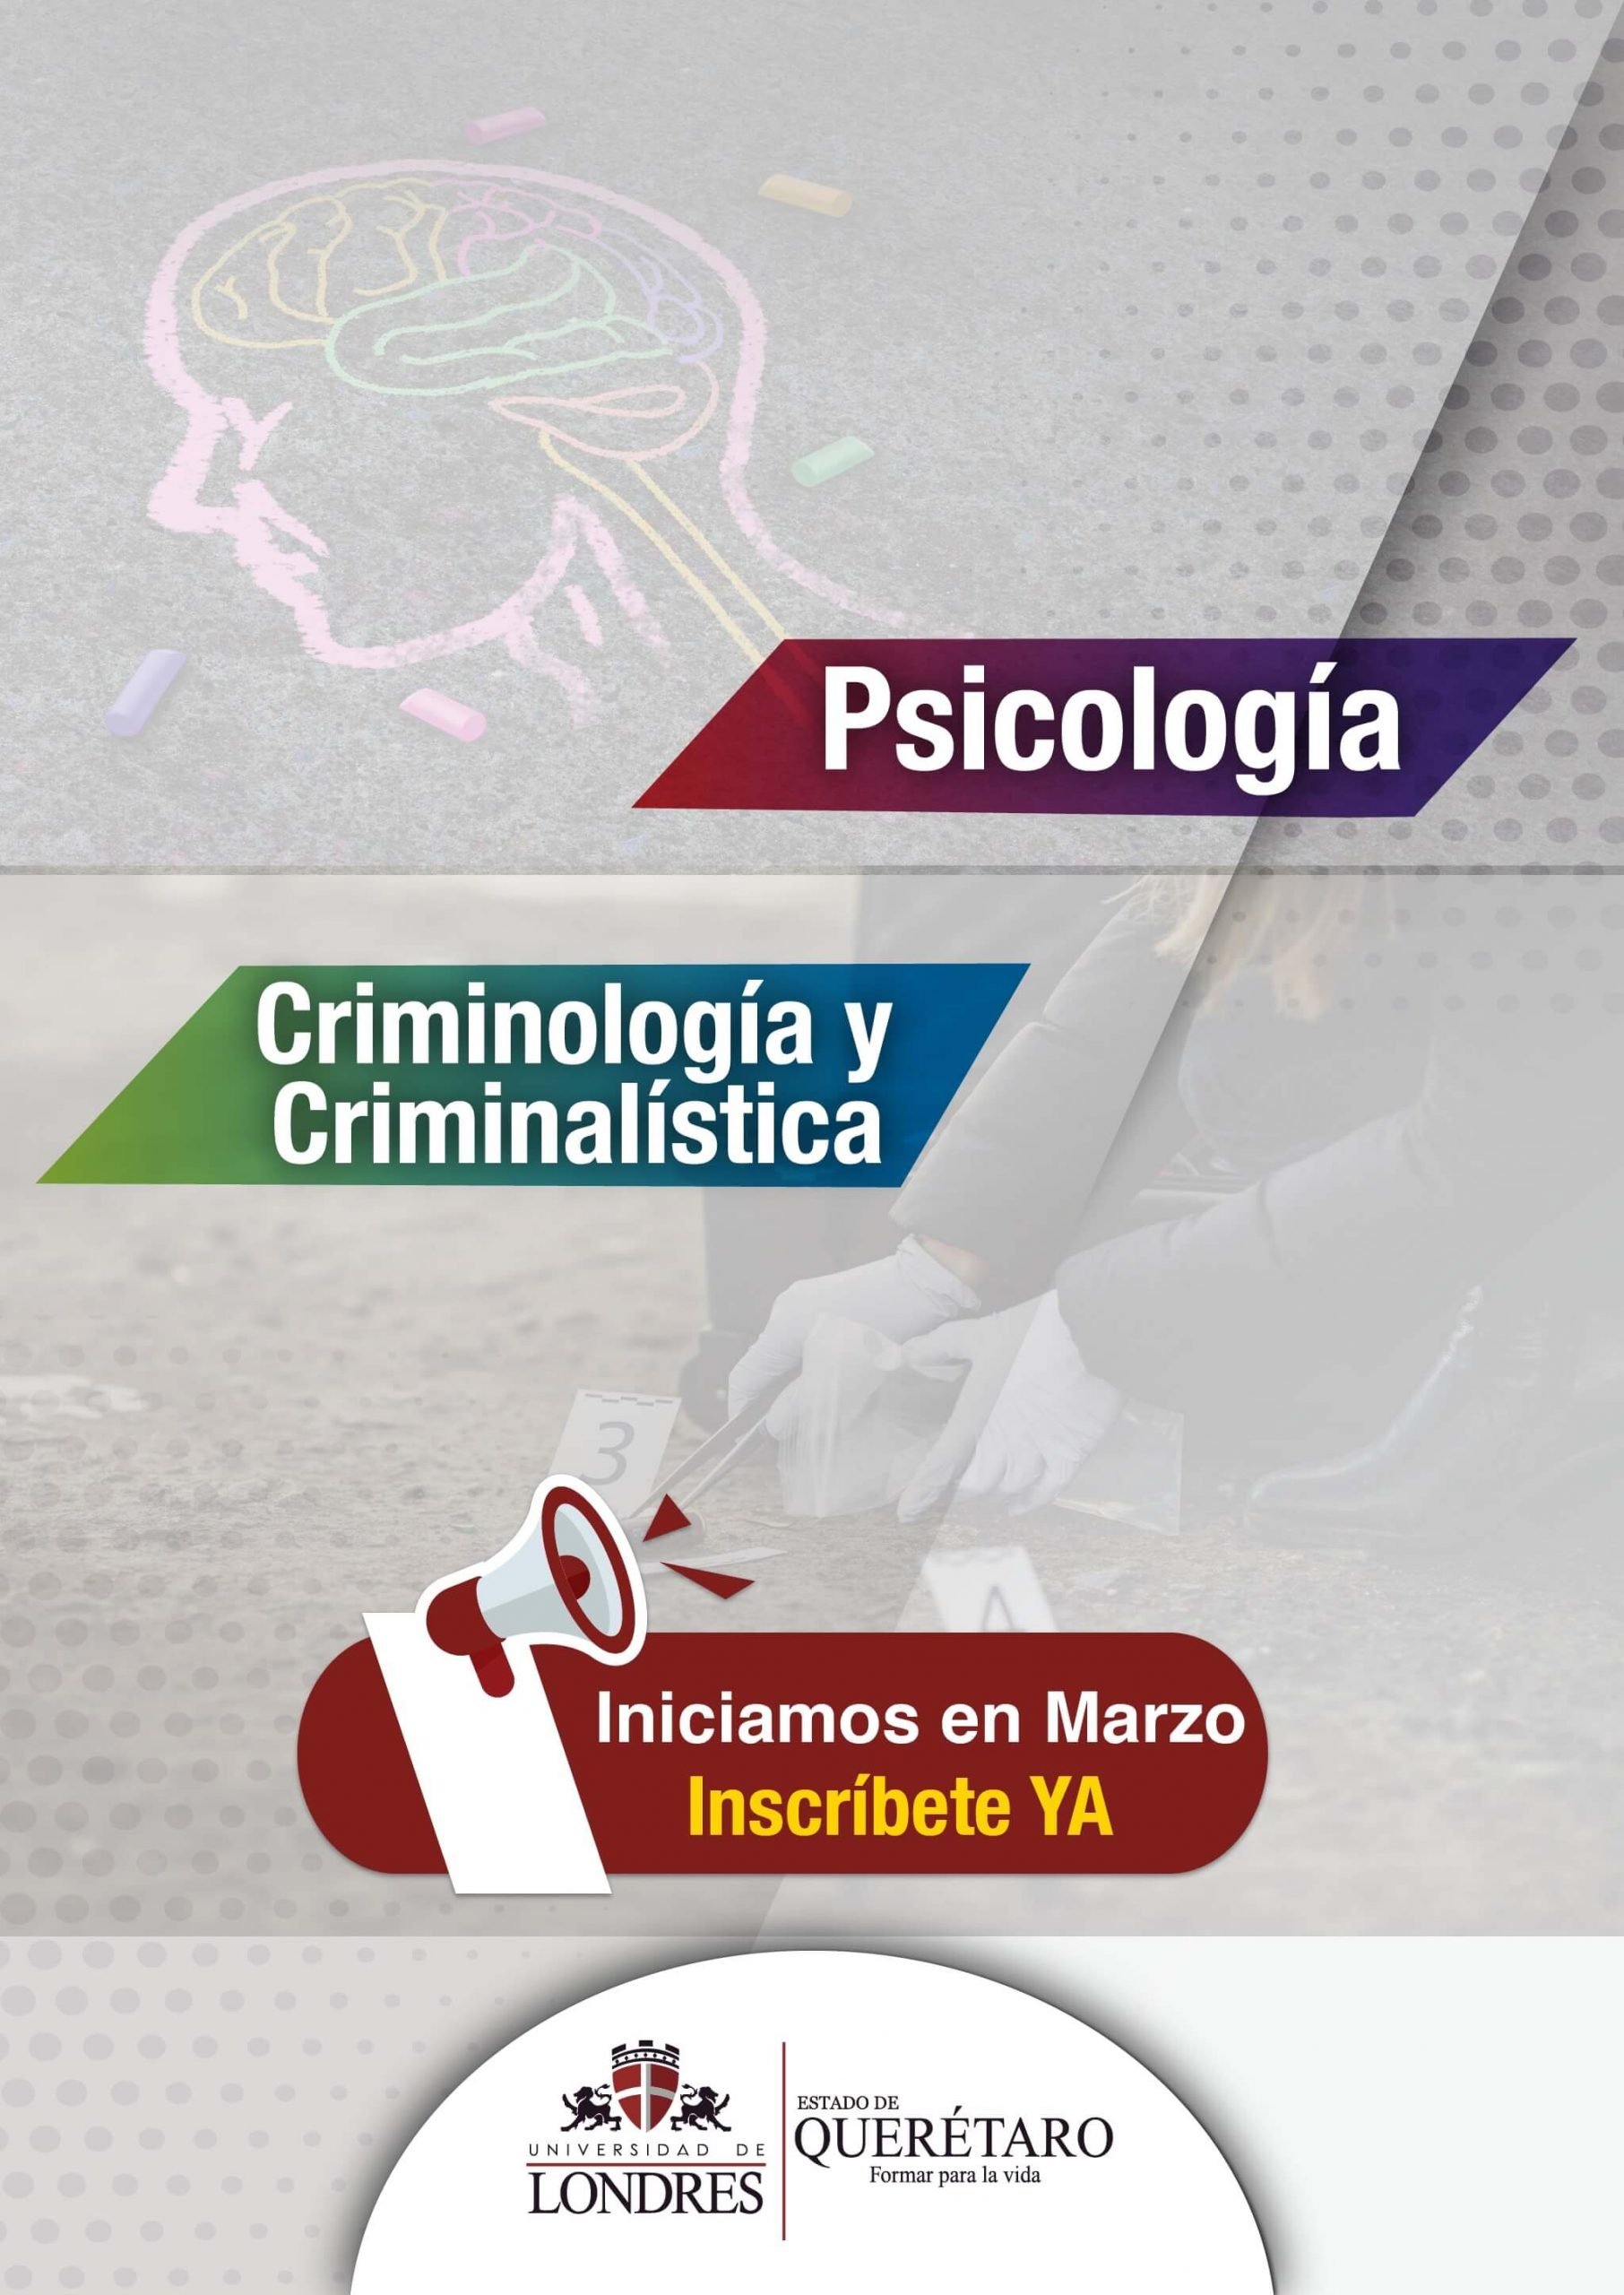 Psicología - Criminología y Criminalística. ¡Inscríbete ya!